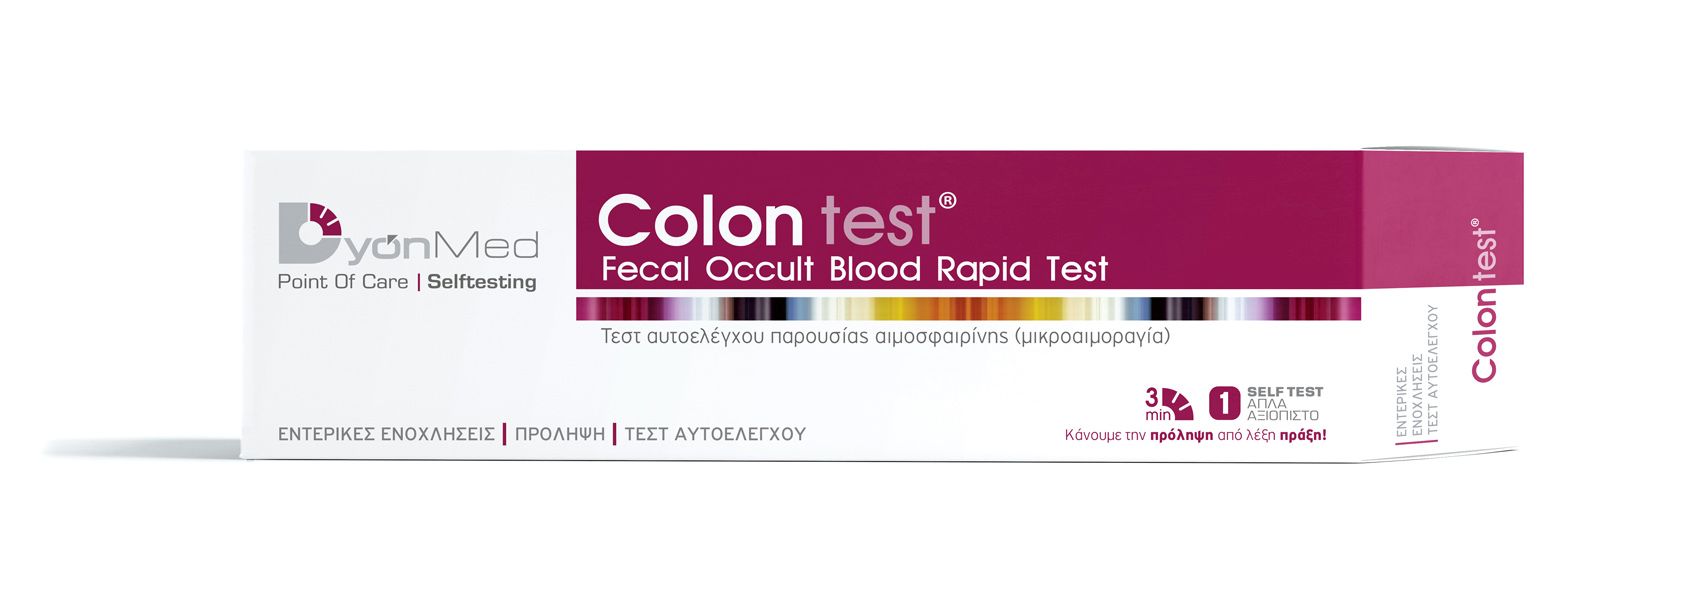 Colon test 